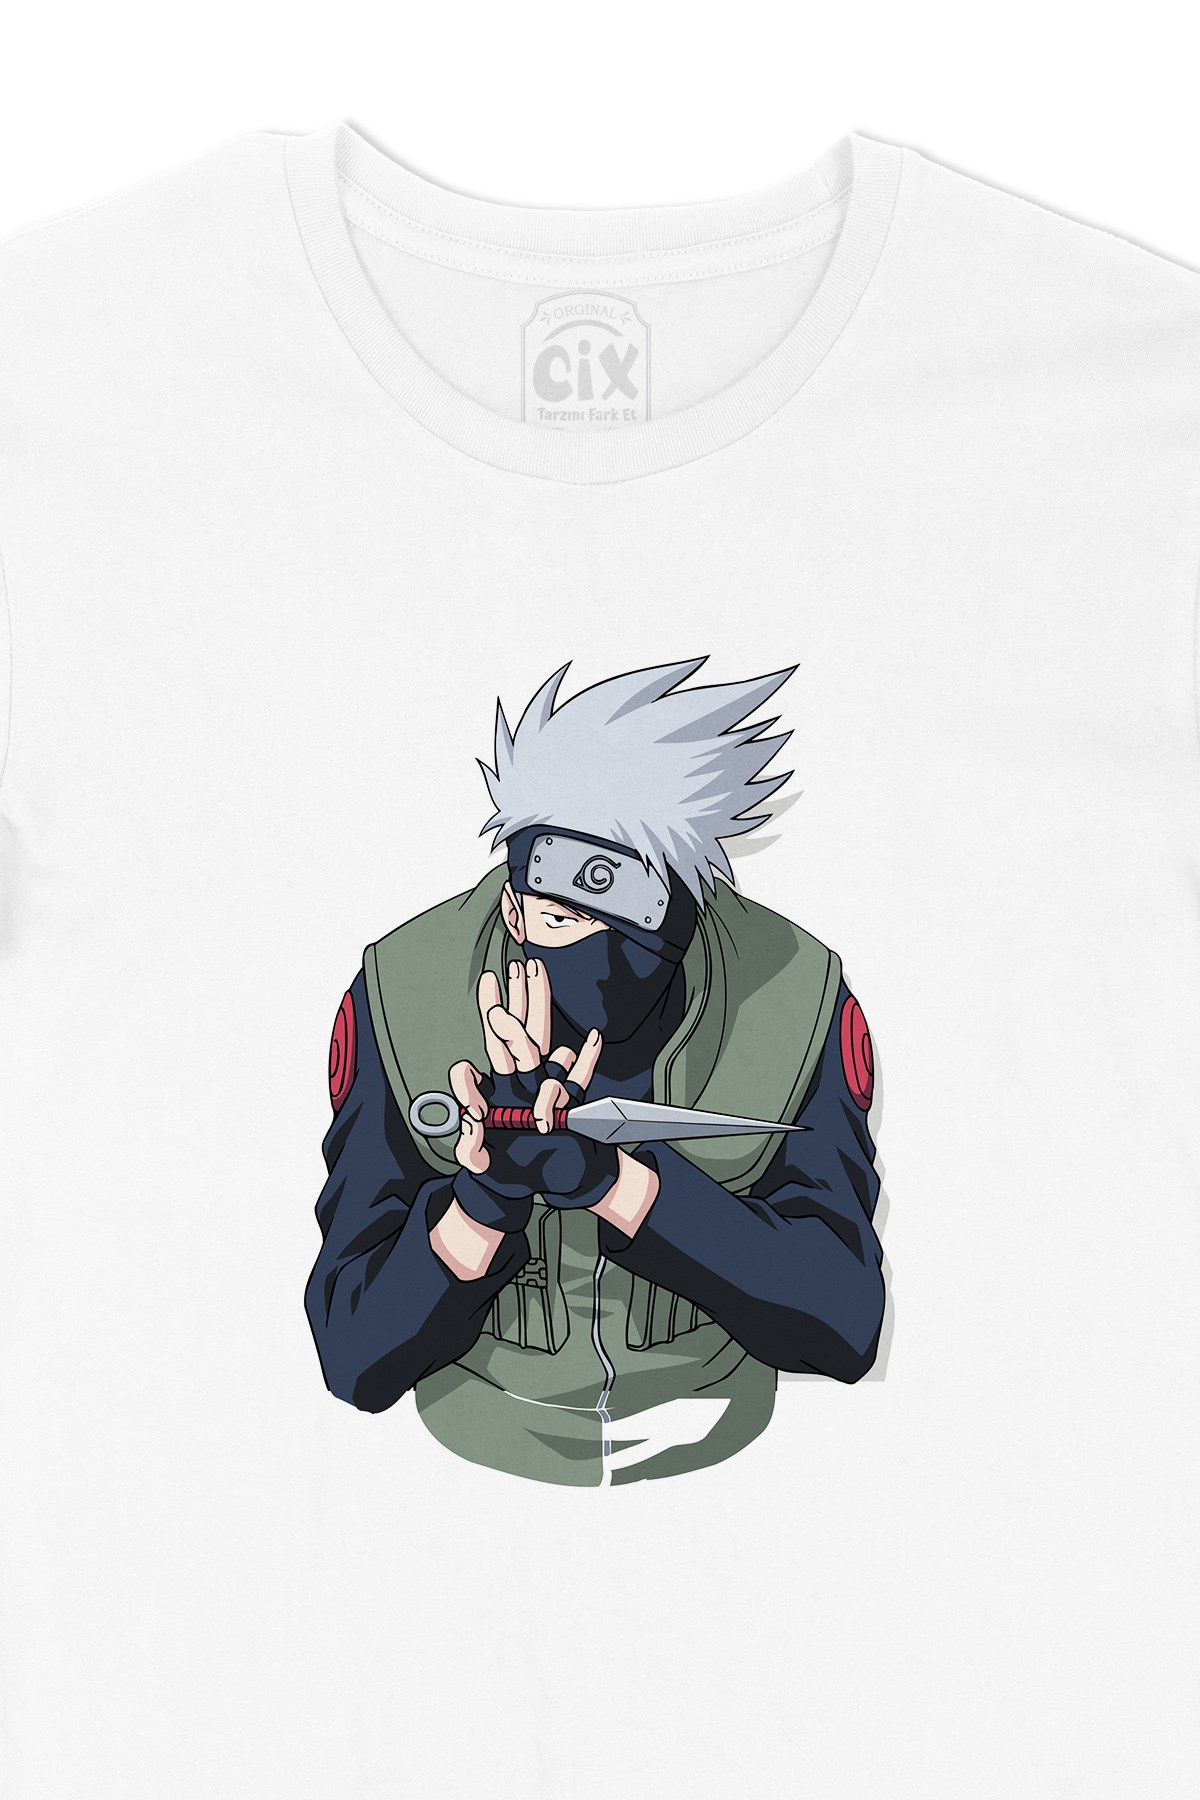 Cix Naruto Kakashi Hatake Tişört - Ücretsiz Kargo